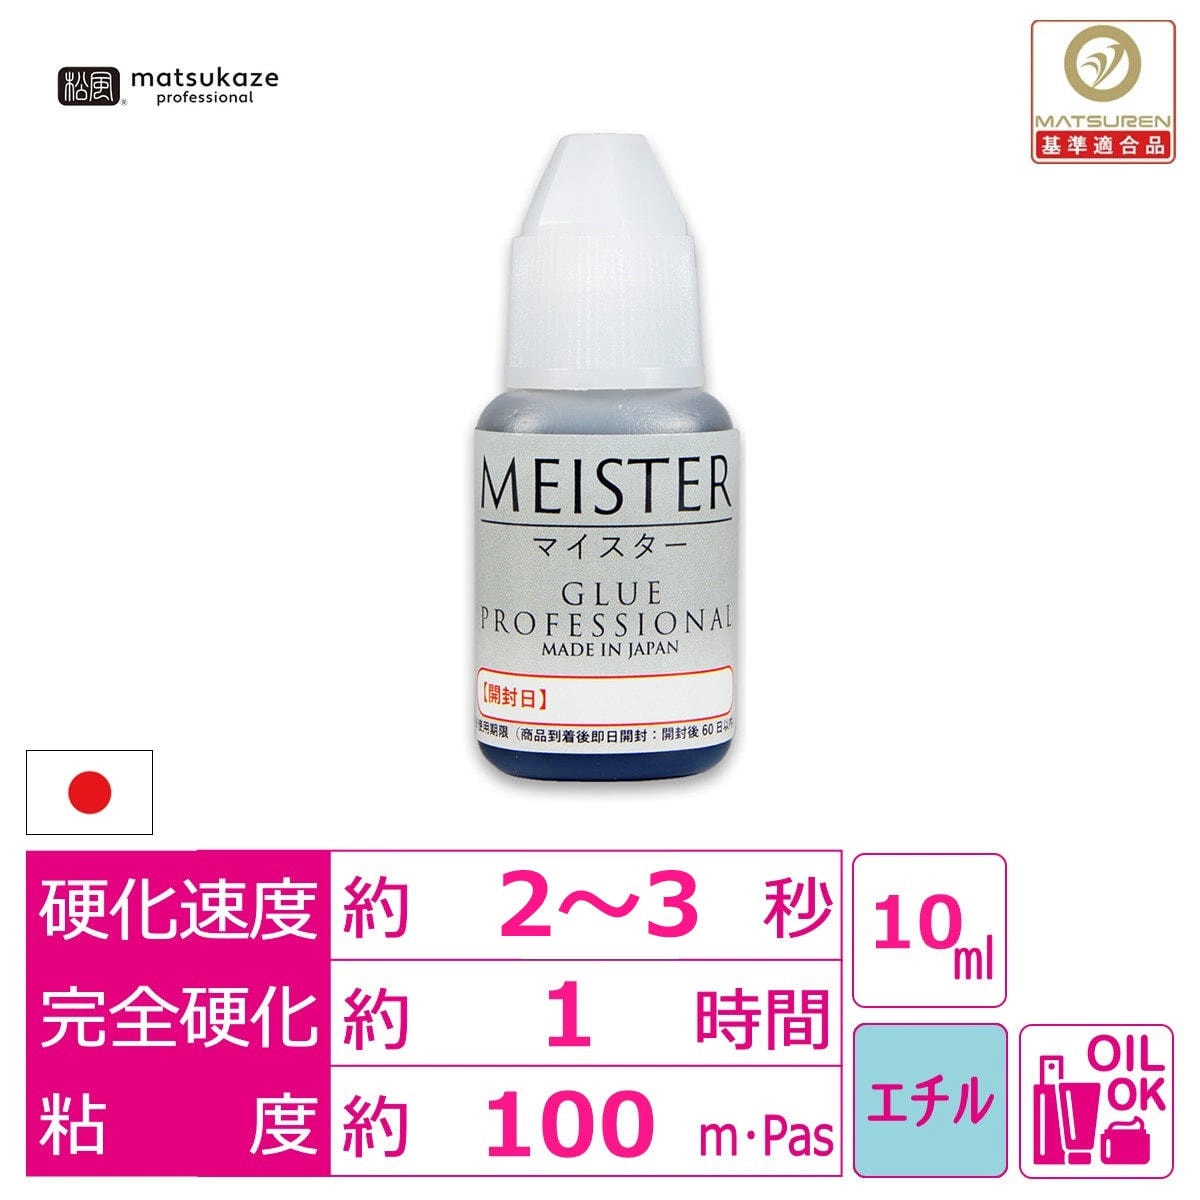 【松風】マイスターグルー「MEISTER GLUE」松風プロフェッショナル 10ml